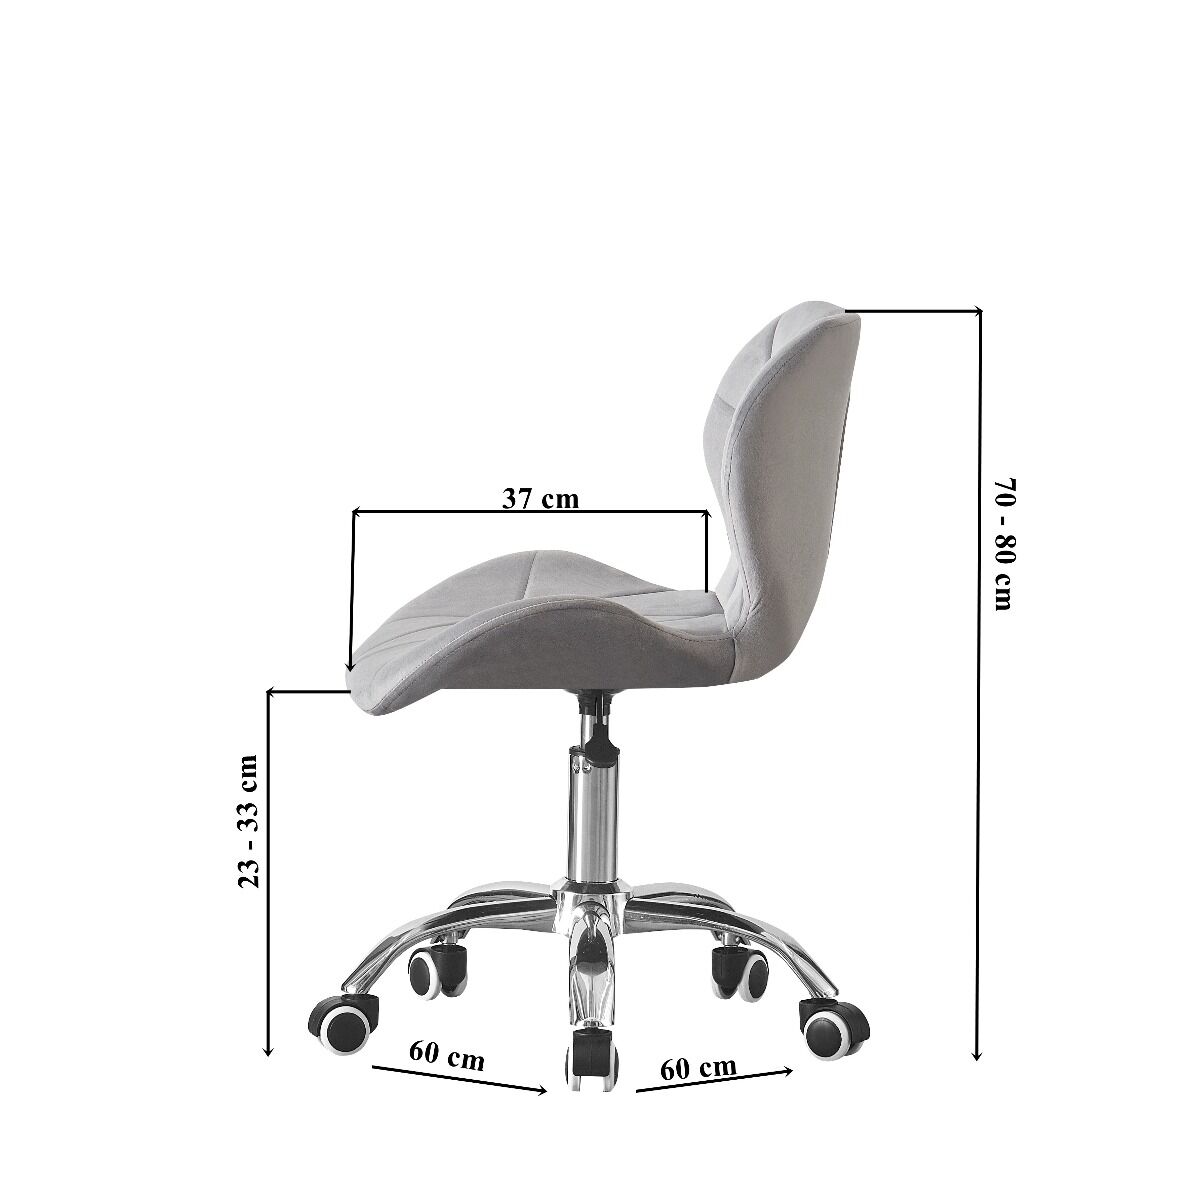 Fotel krzesło obrotowy welur szary podstawa chrom